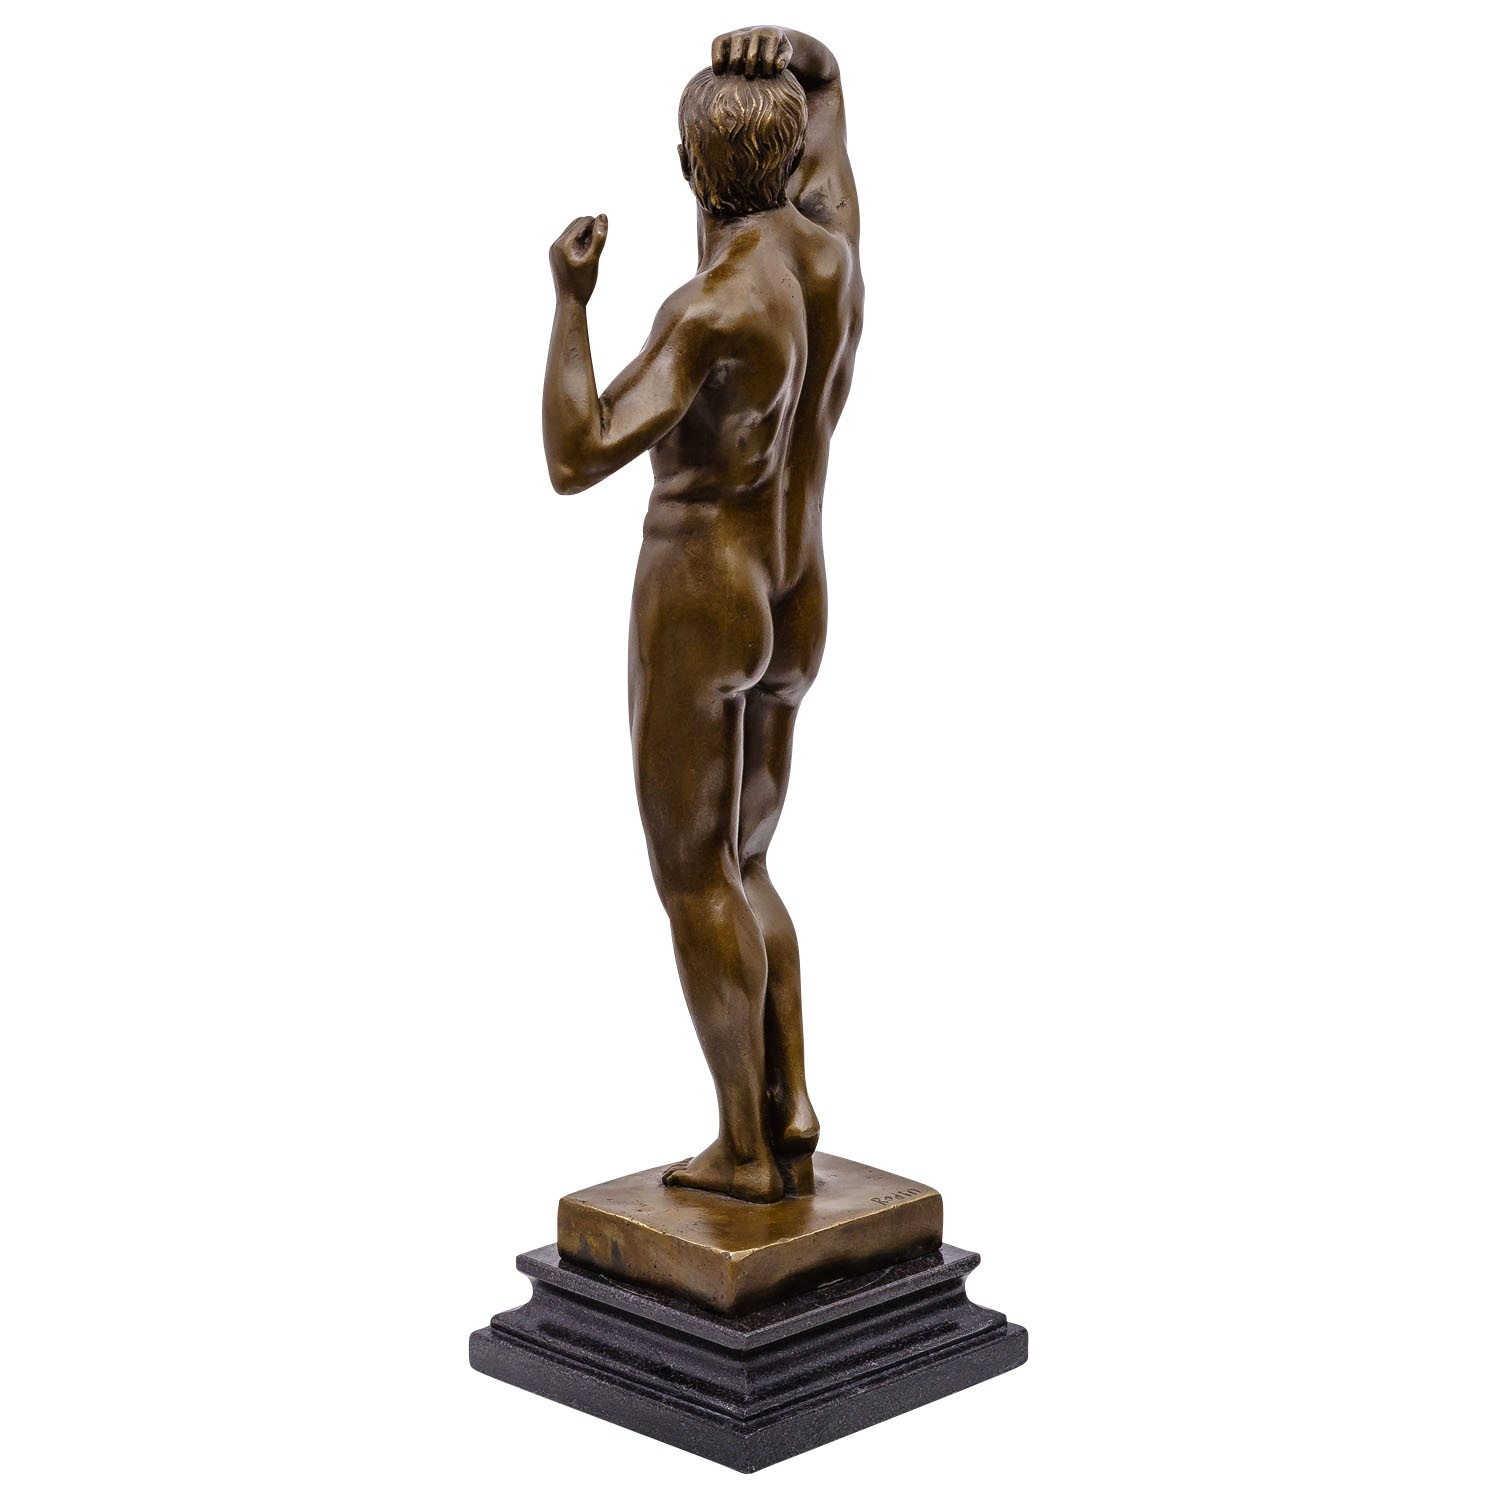 Gartenfiguren Selber Machen Einzigartig Details Zu Bronzeskulptur Erotische Kunst Nach Rodin Bronze Akt Mann Figur Skulptur 47cm